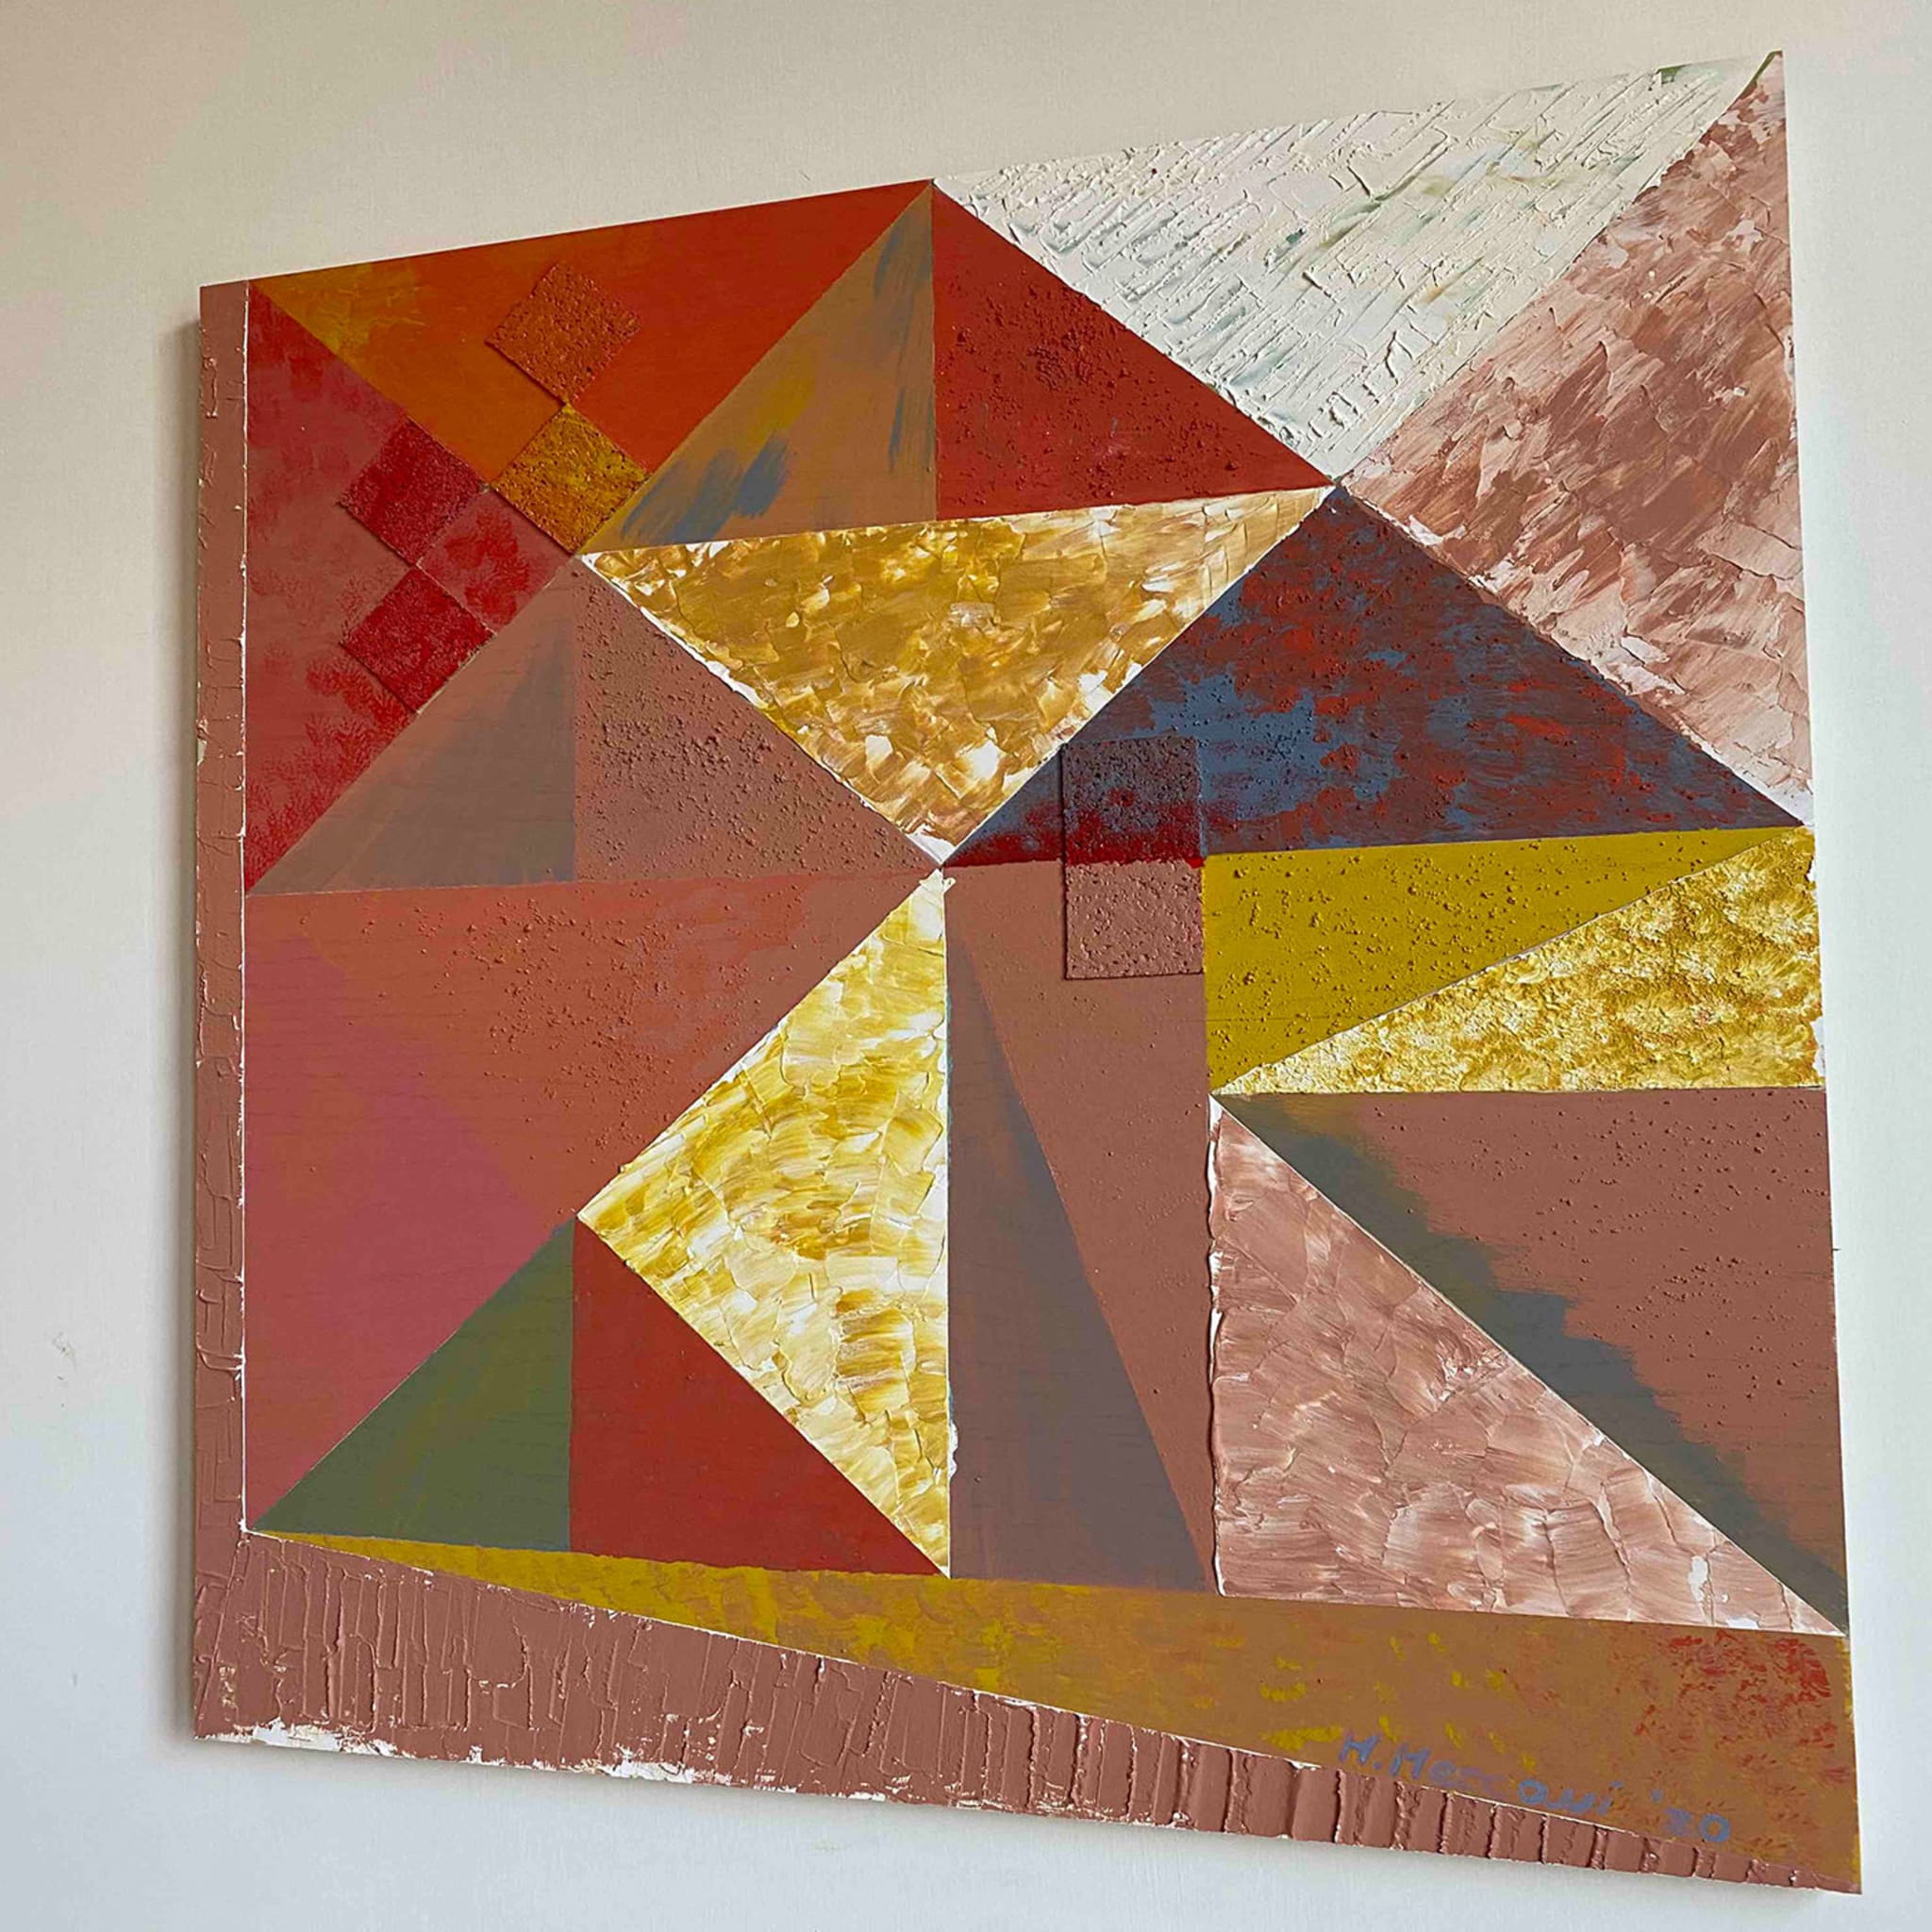 Triangolazioni Quattro Decorative Panel by Mascia Meccani - Alternative view 1